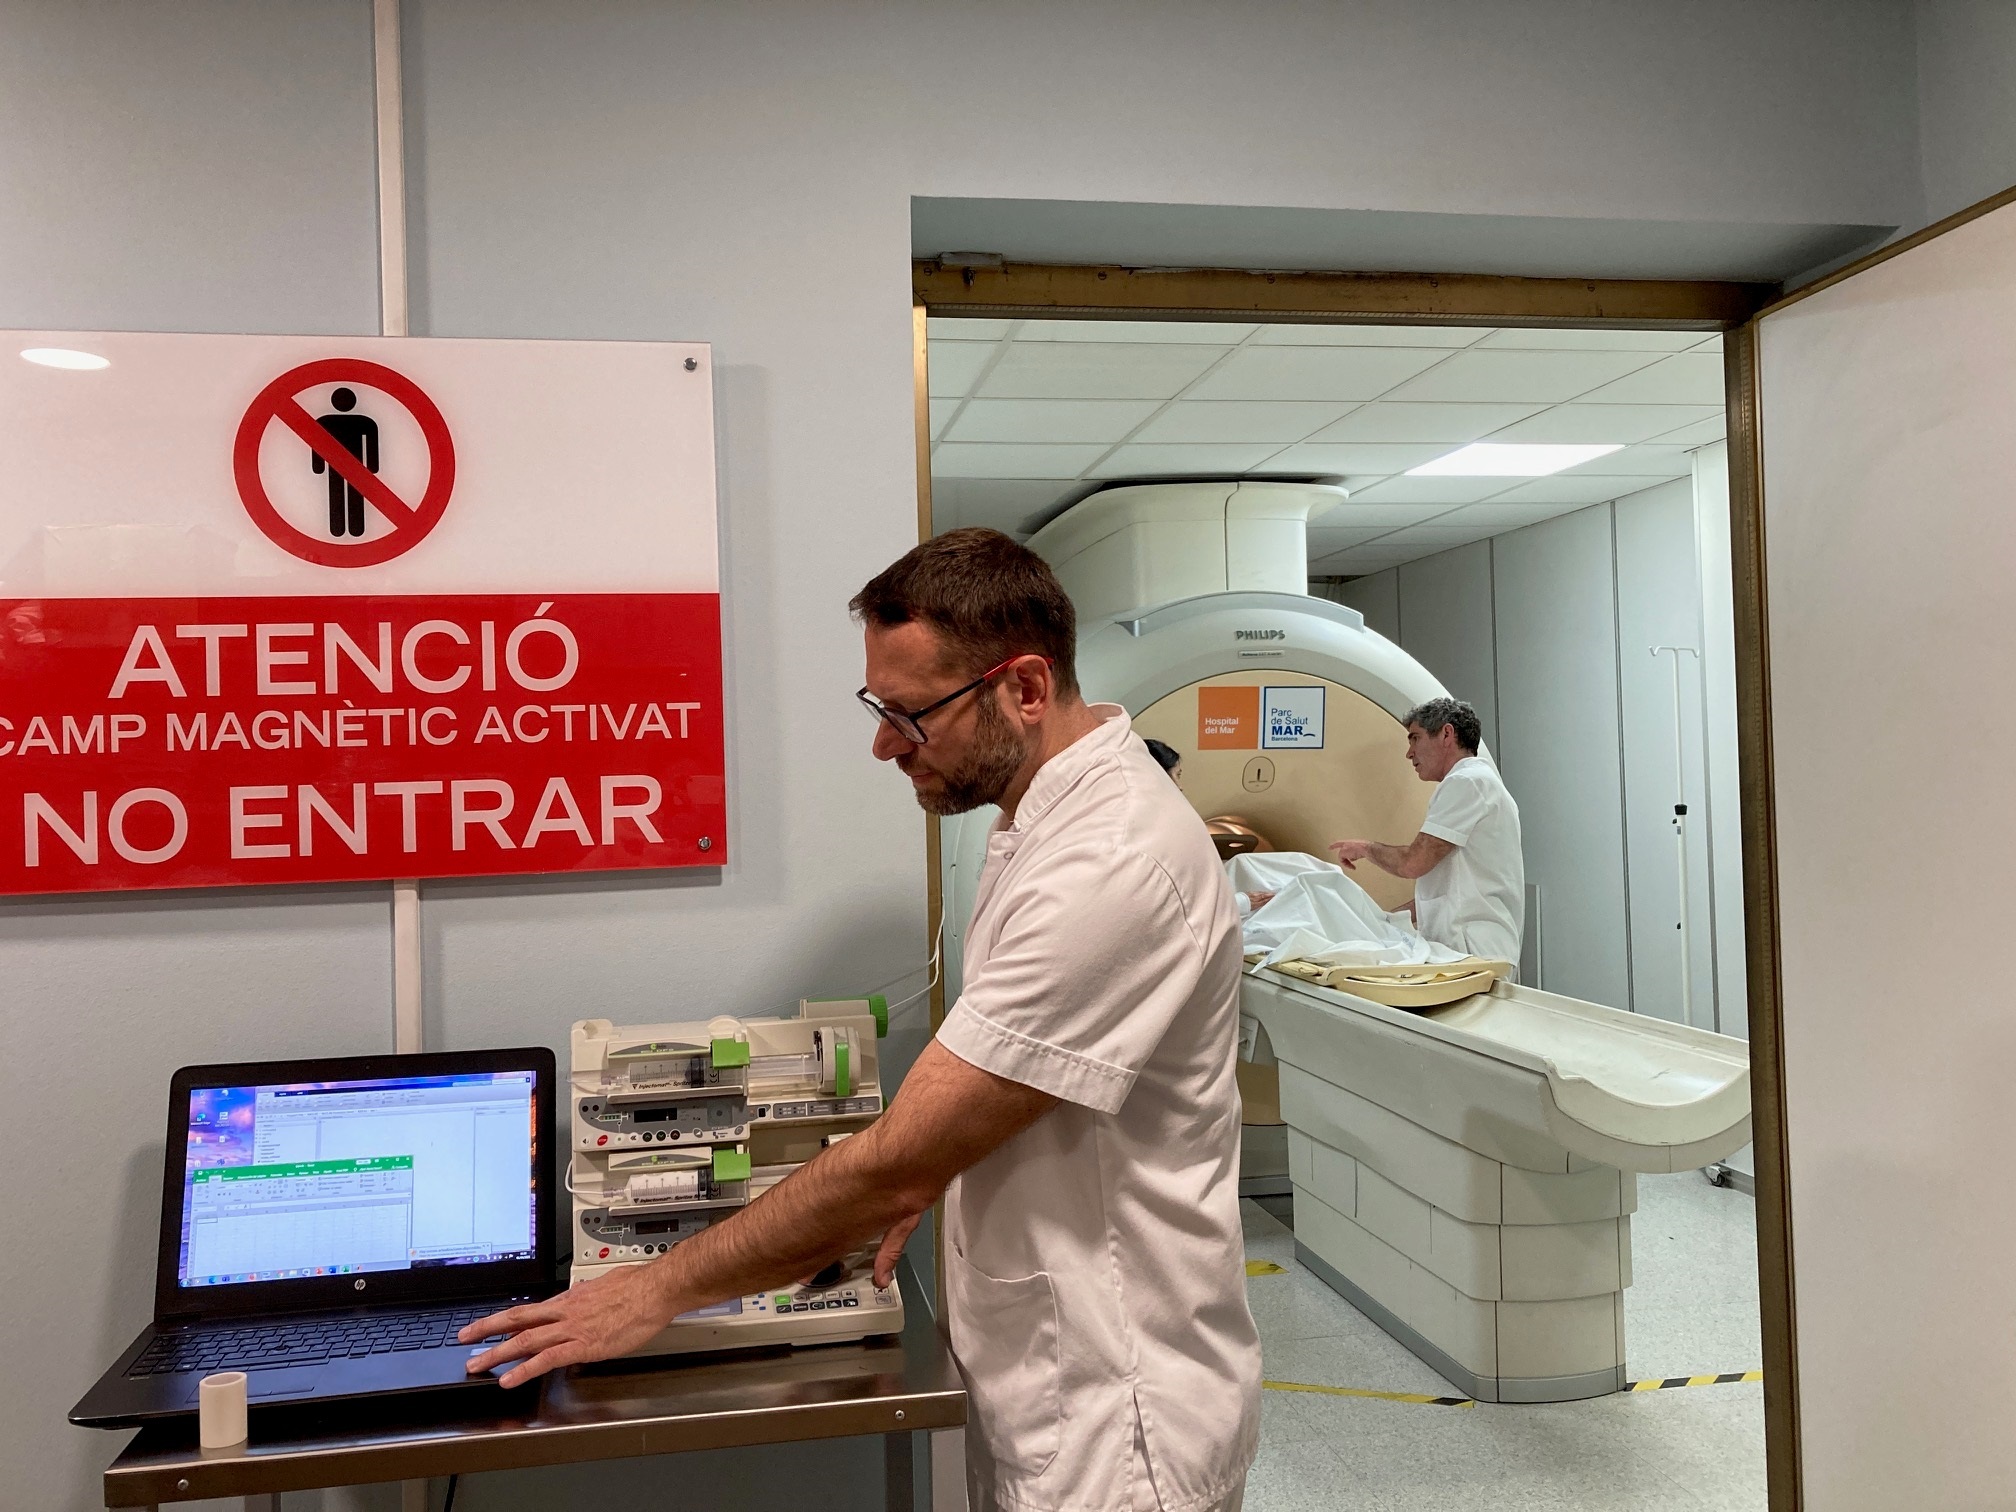 Máquina de resonancia magnética “absorbió” un tanque de oxígeno y mató a un paciente durante su escaneo